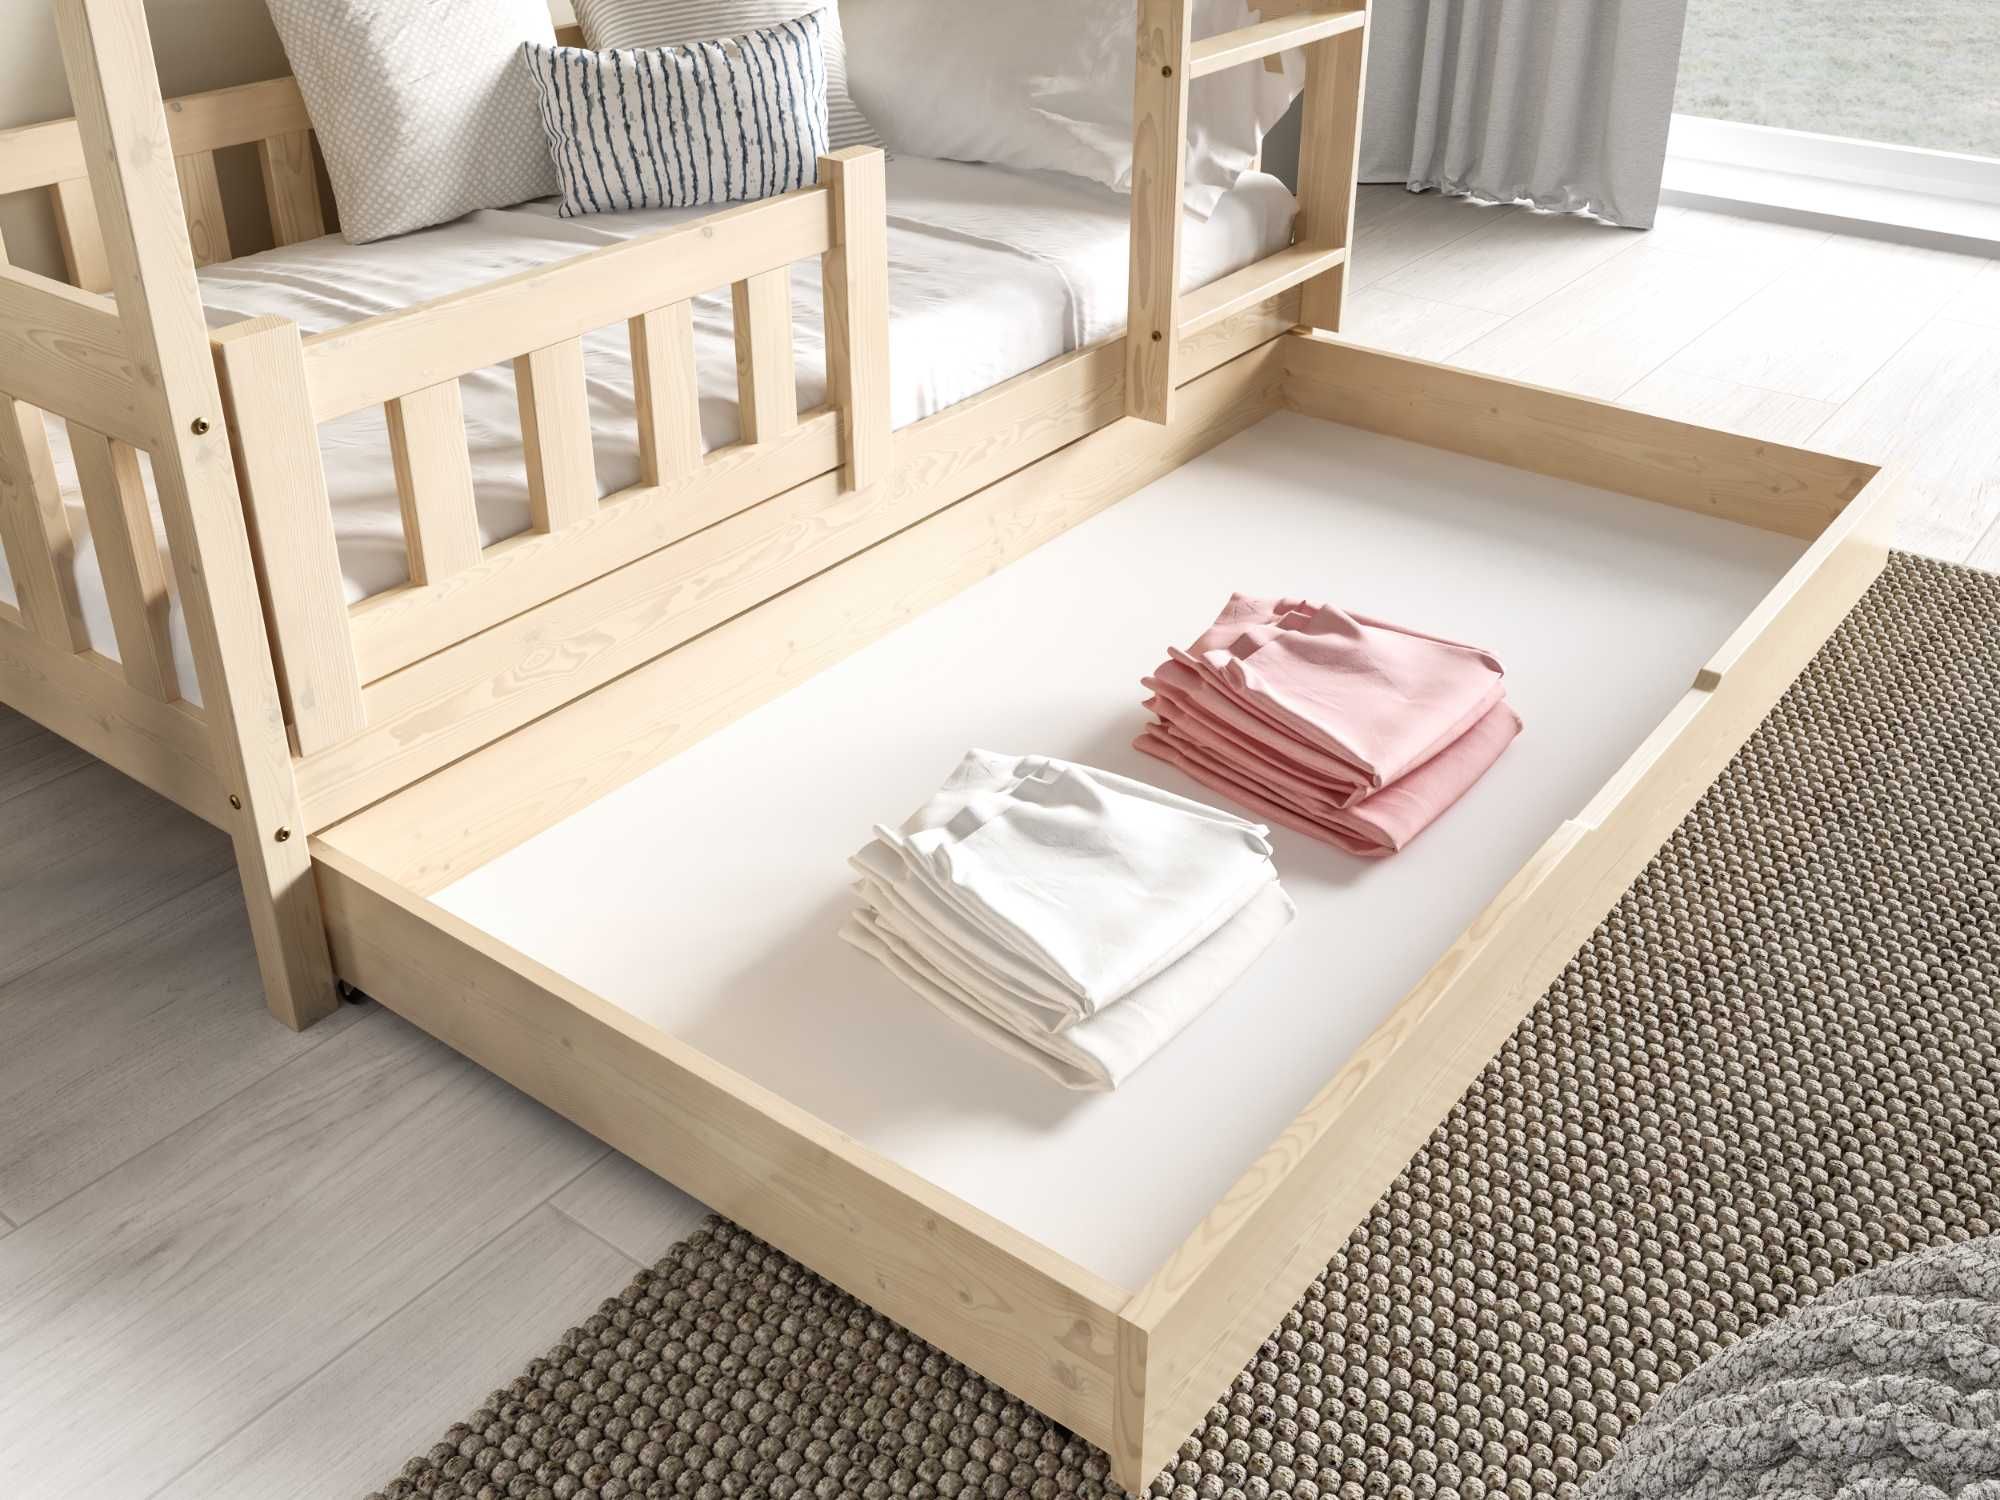 ZUZIA - piętrowe łóżko dziecięce z drewna sonowego